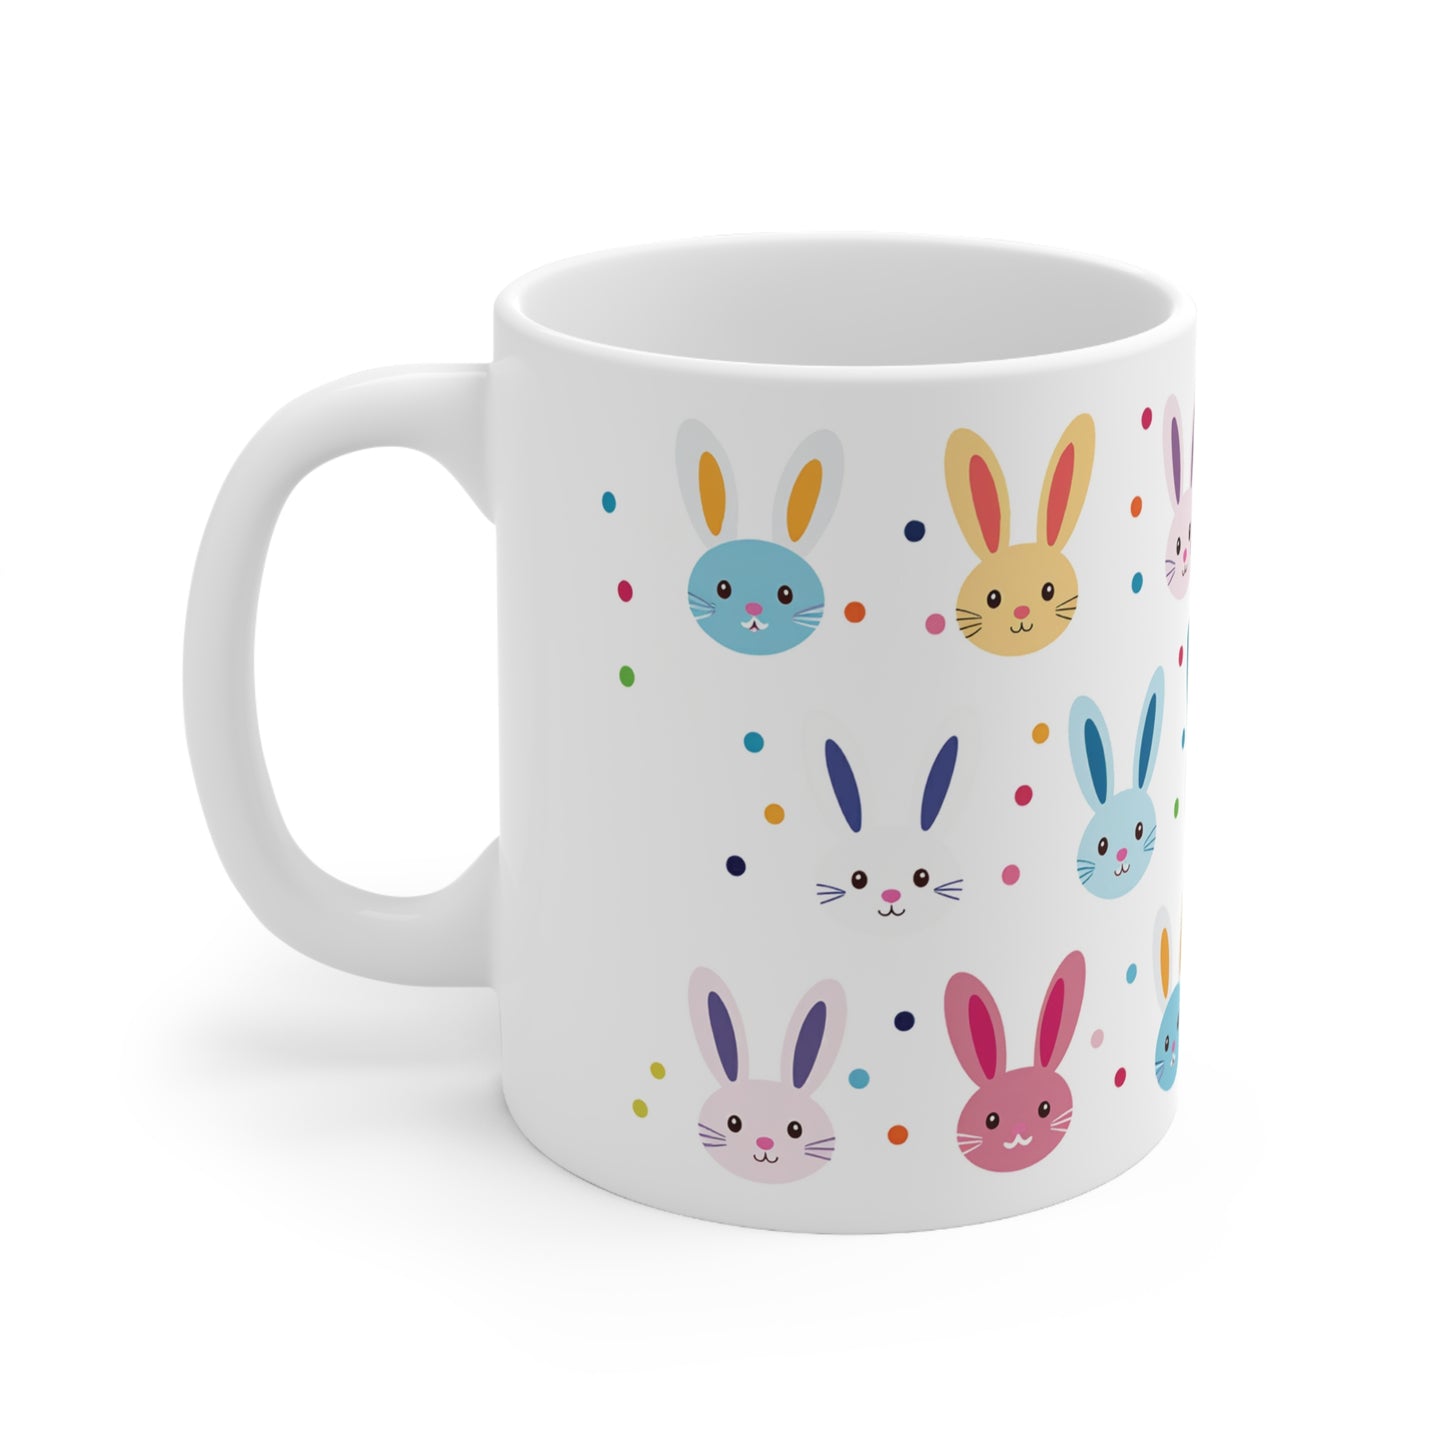 Easter Coffee Mug, Easter Bunny Tea Mug, Bunny Rabbit Mug, Colorful Mug, Bunny Pattern Cup, Easter Gift Idea, Ceramic Easter Mug